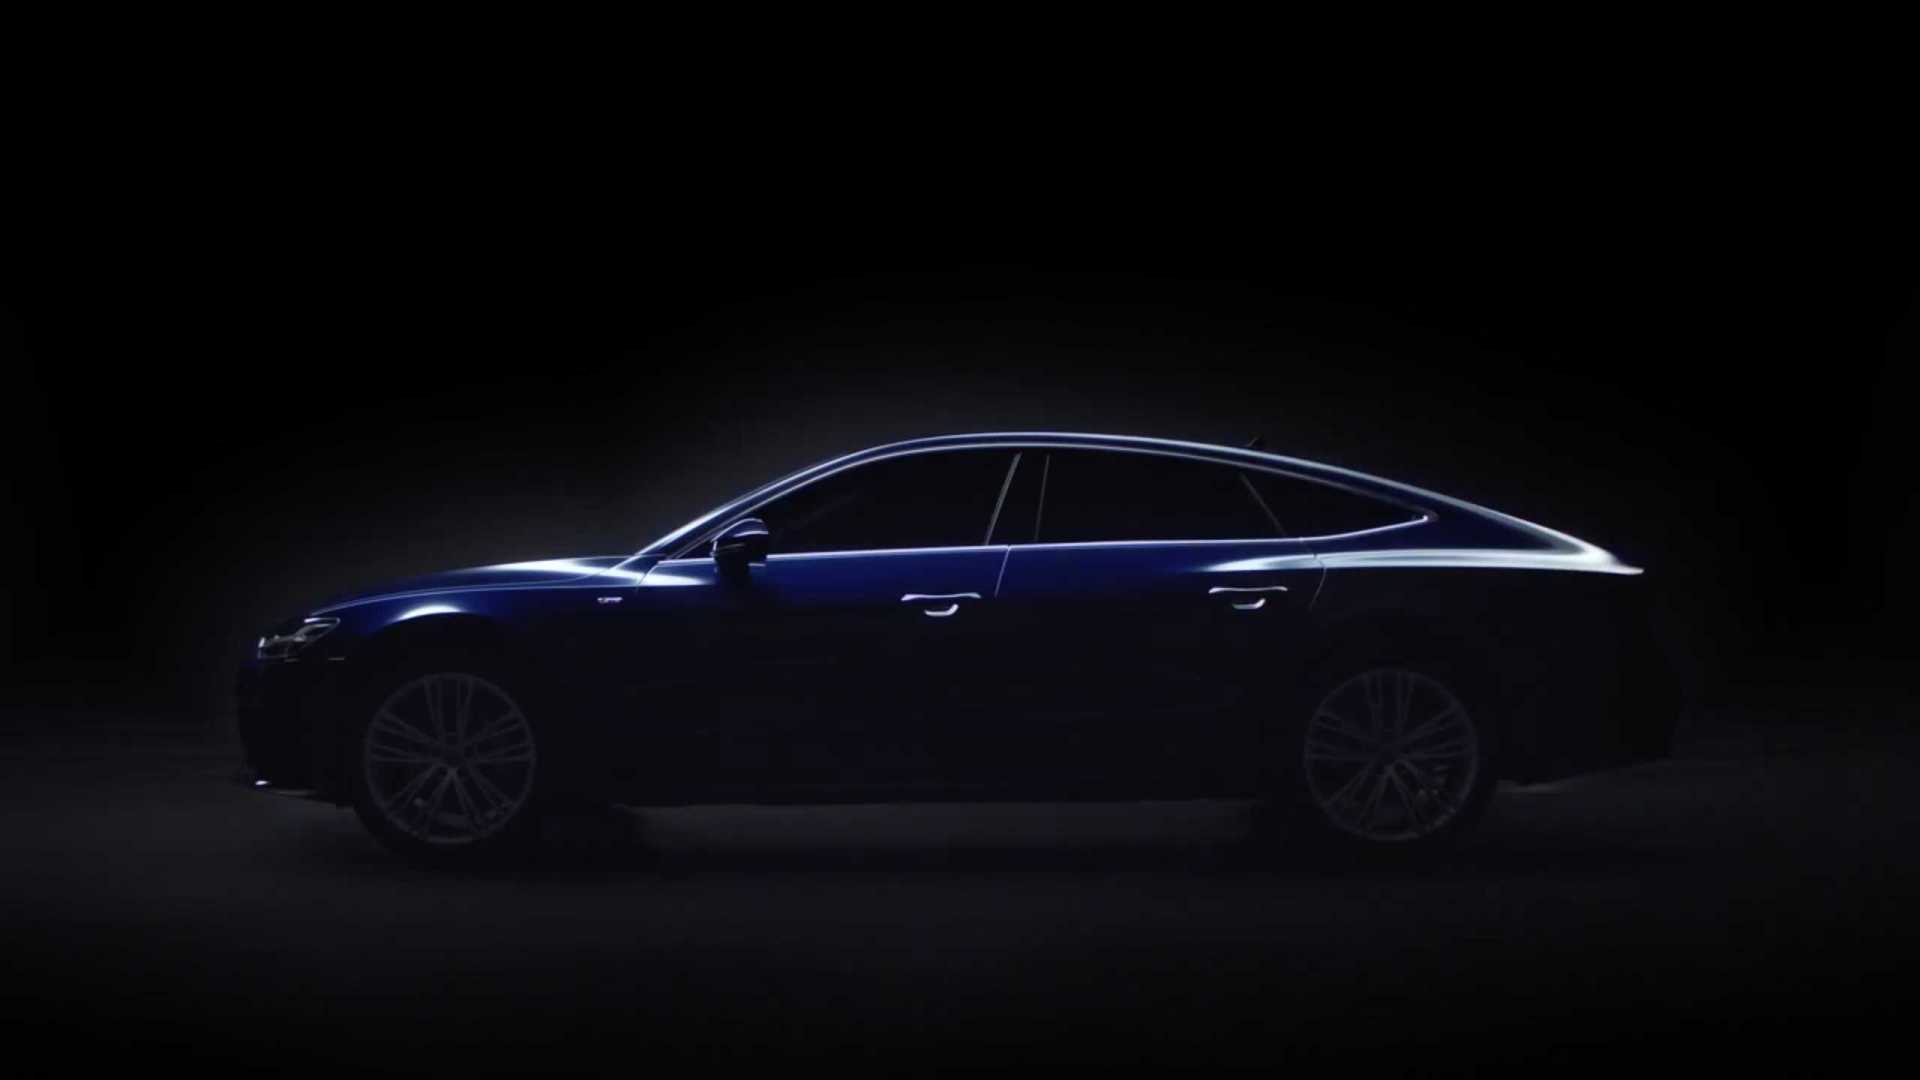 Audi奥迪A7L产品互动视频「光影篇」